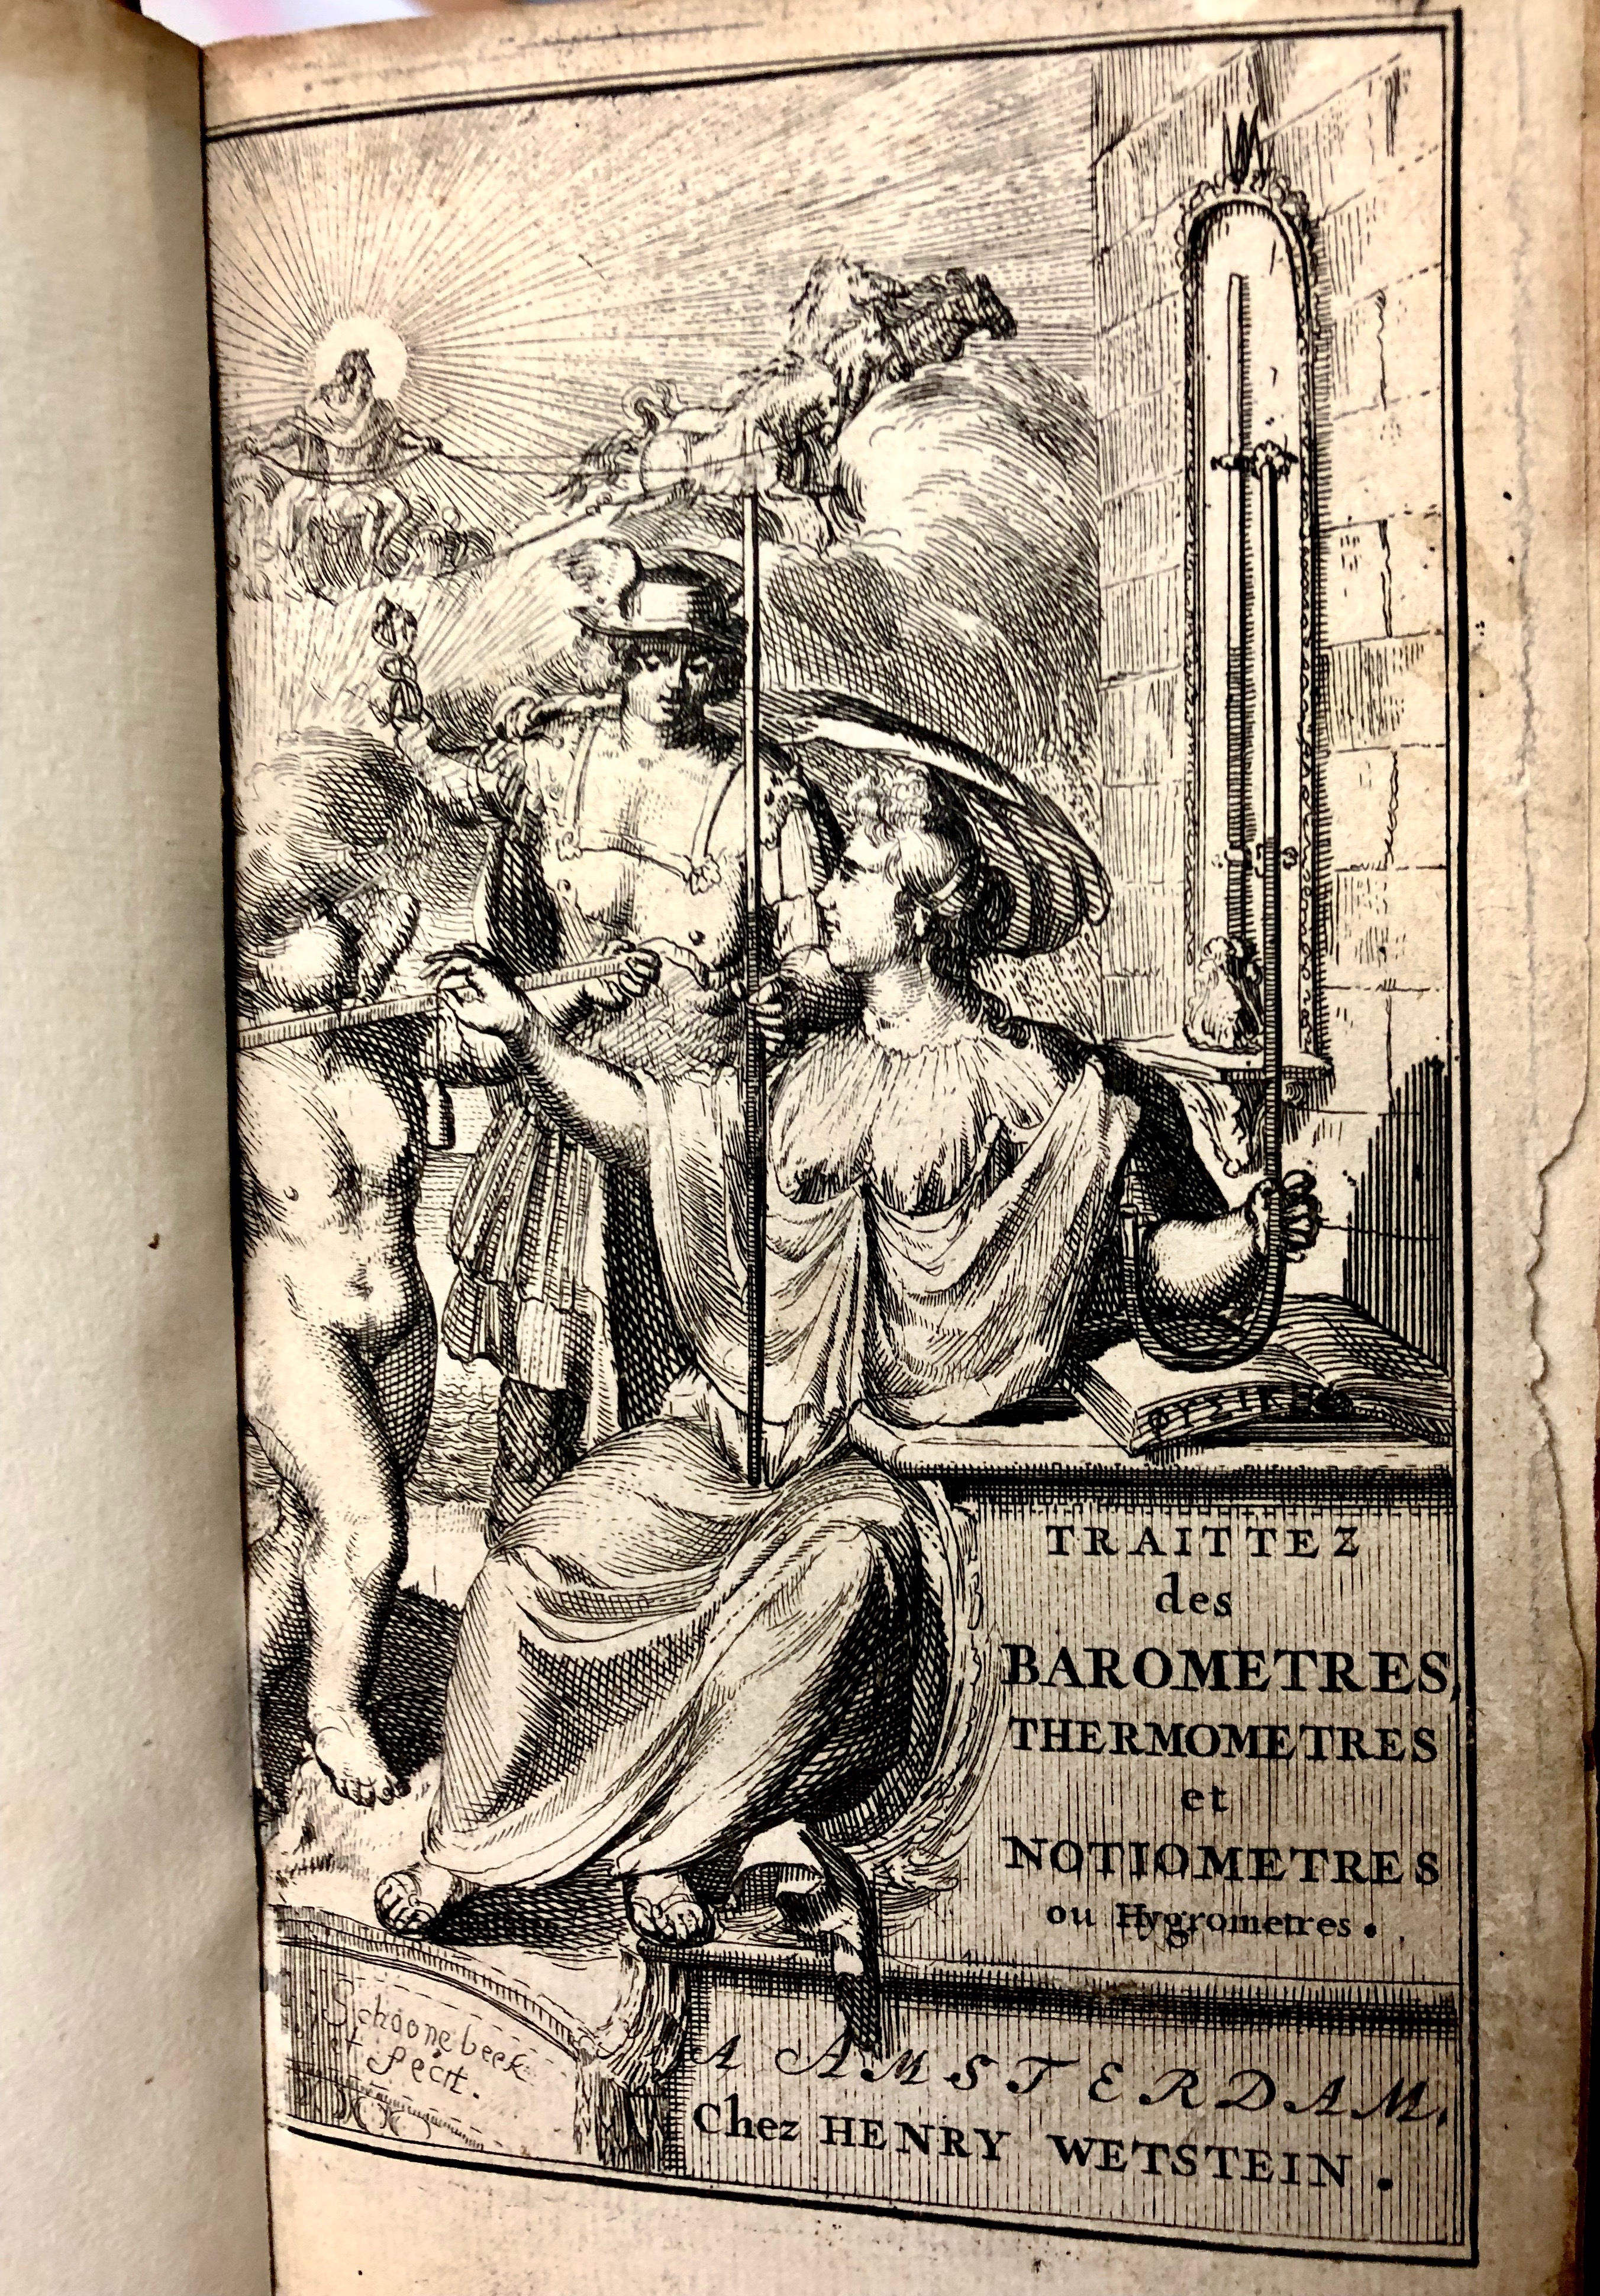 Illustration from ' Traittez des baromètres, thermomètres, et notiomètres : ou hygromètres' by Joachim d'Alence, 1688, Amsterdam. (Maddison Collection 2A5, F10456500)